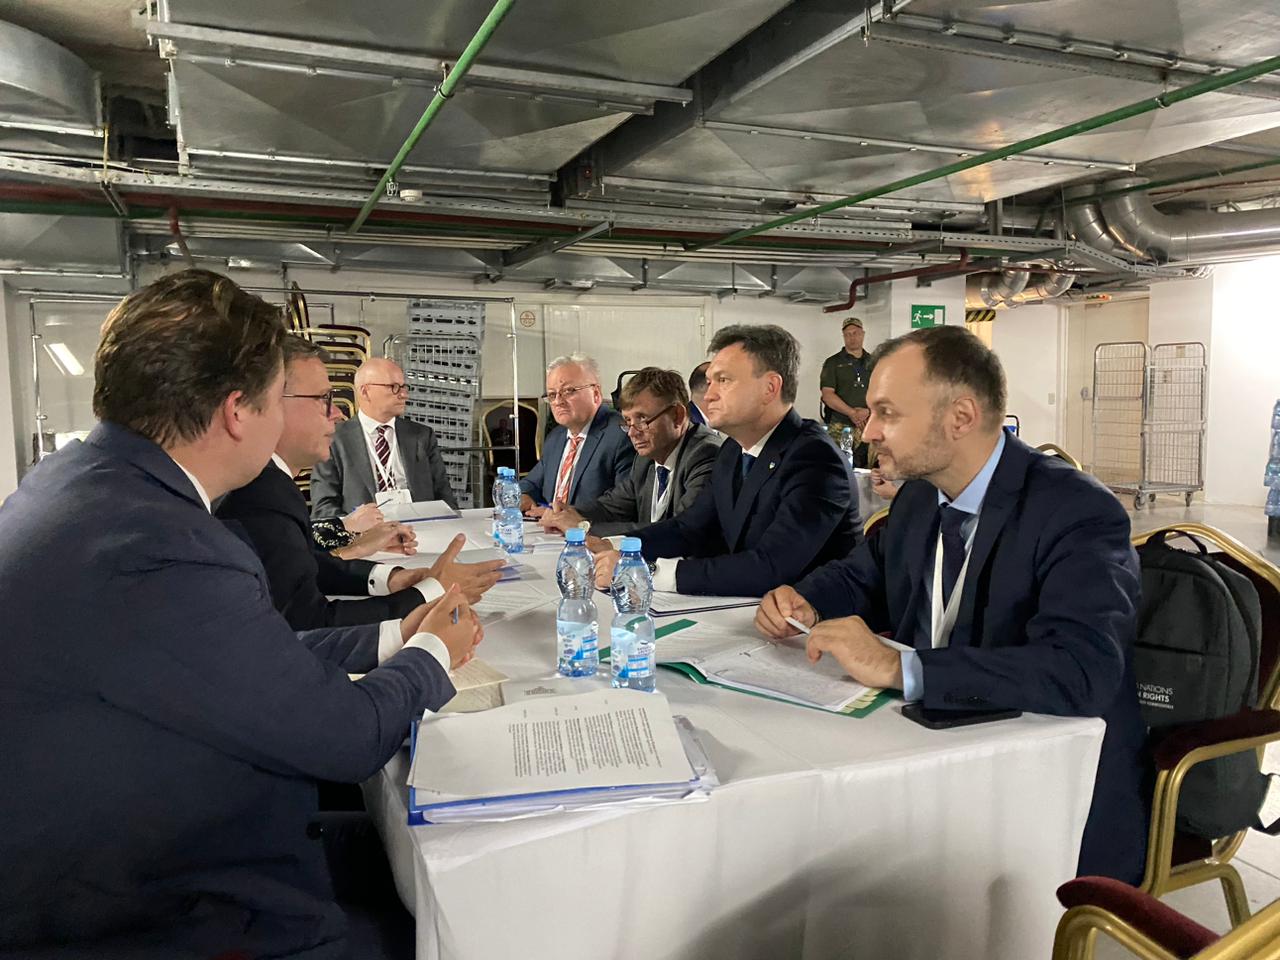 (ФОТО) Дорин Речан встретился с премьер-министром Финляндии и президентом Венгрии. Что они обсудили?